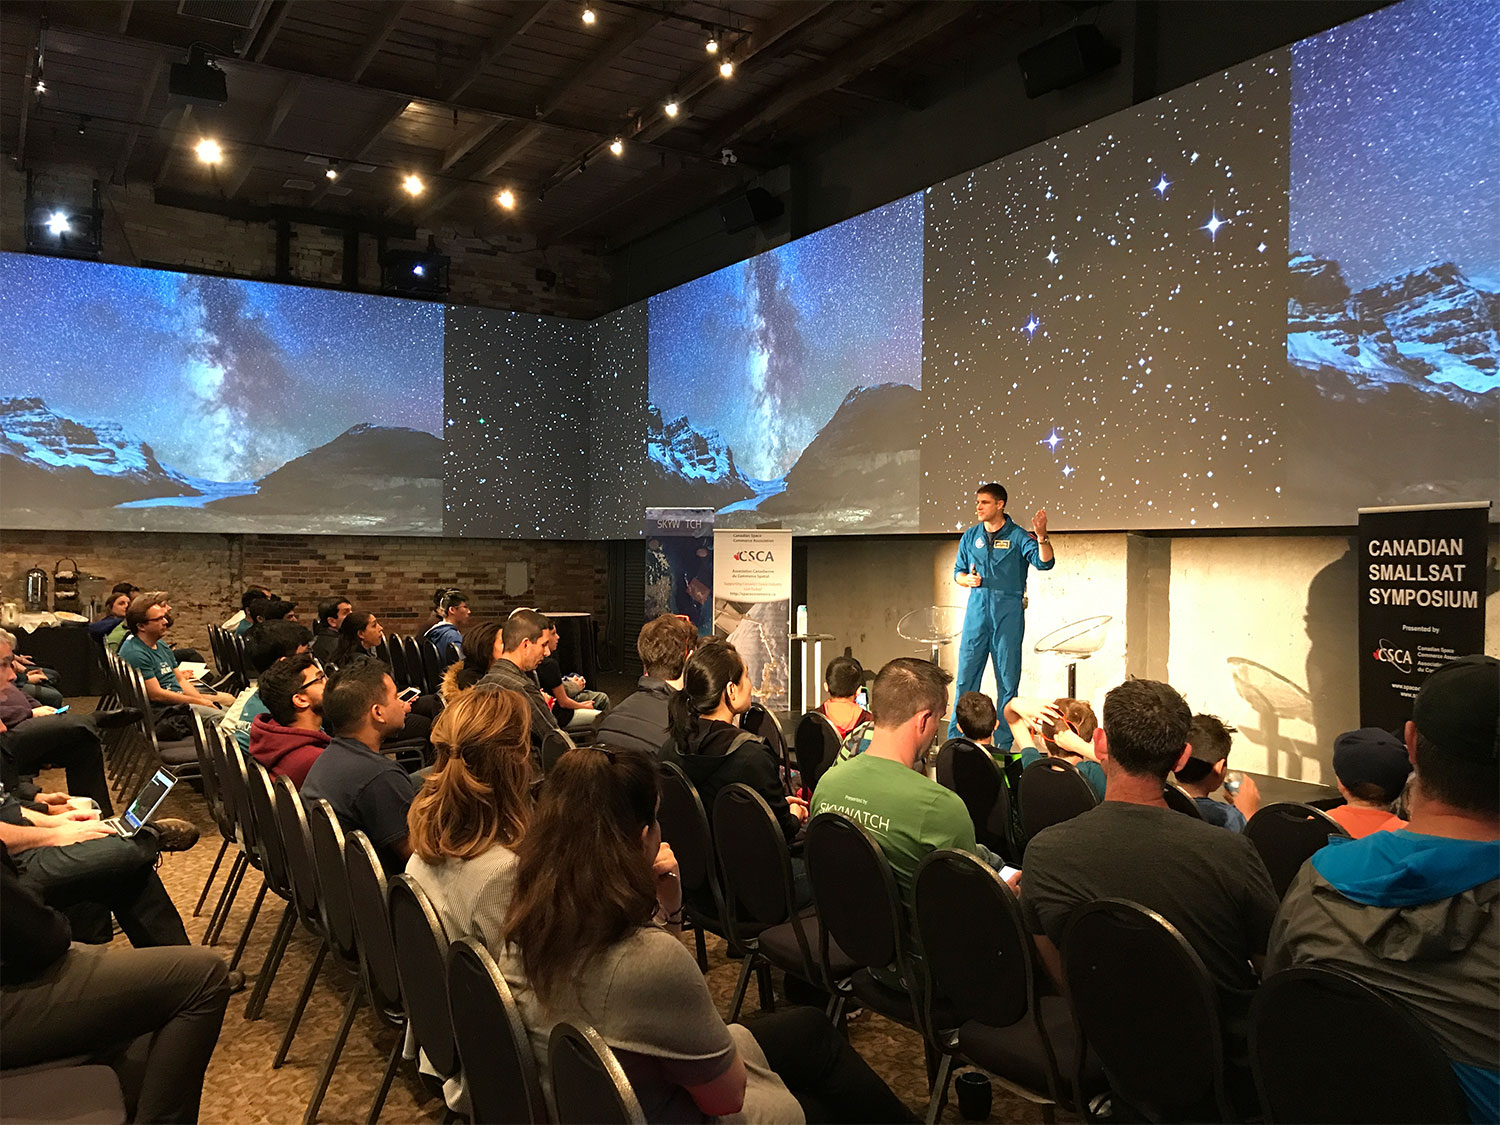 CSA astronaut Jeremy Hansen gives public talk